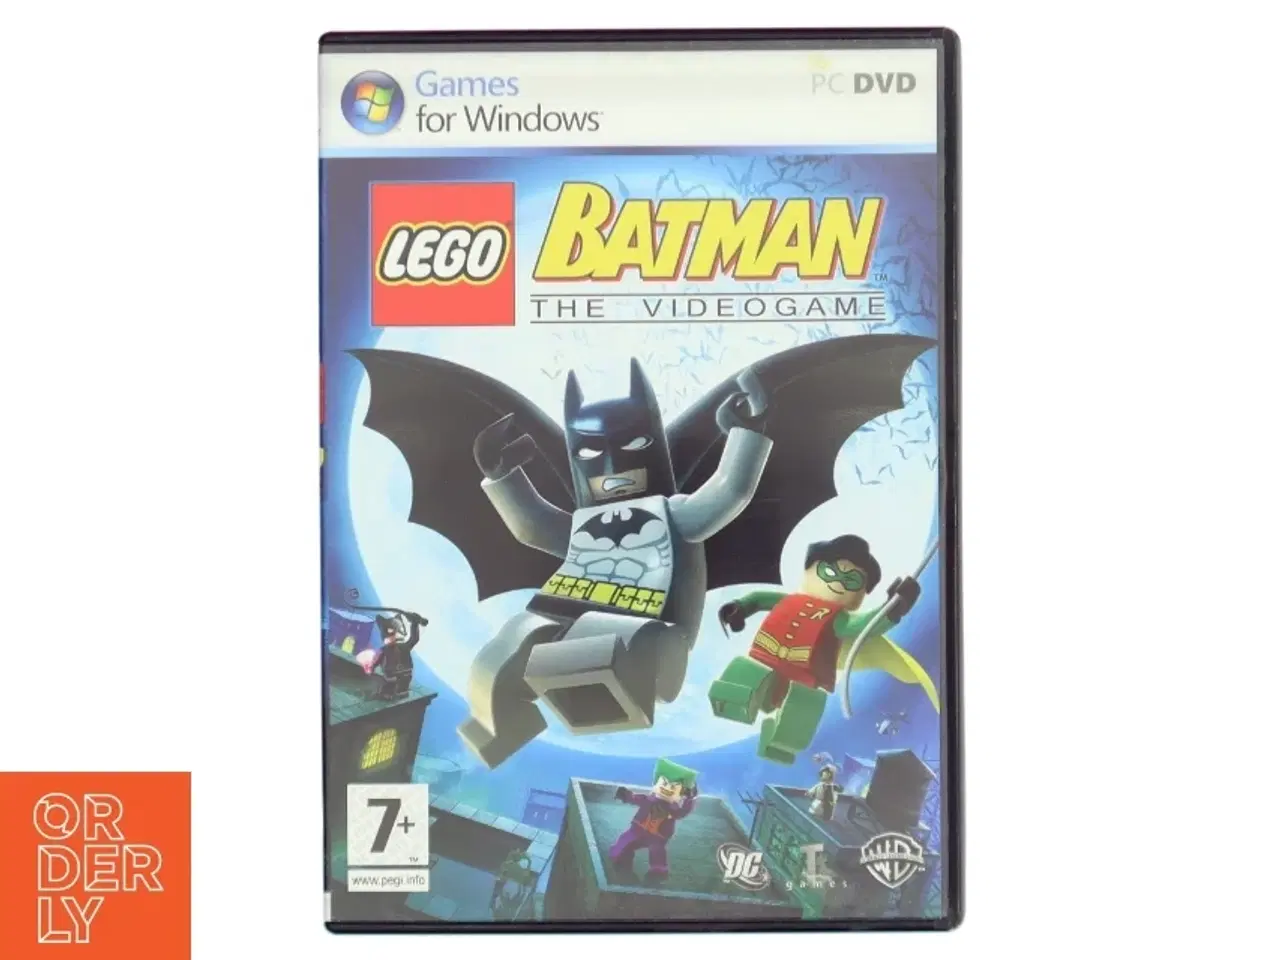 Billede 1 - LEGO Batman Videospil til PC fra LEGO